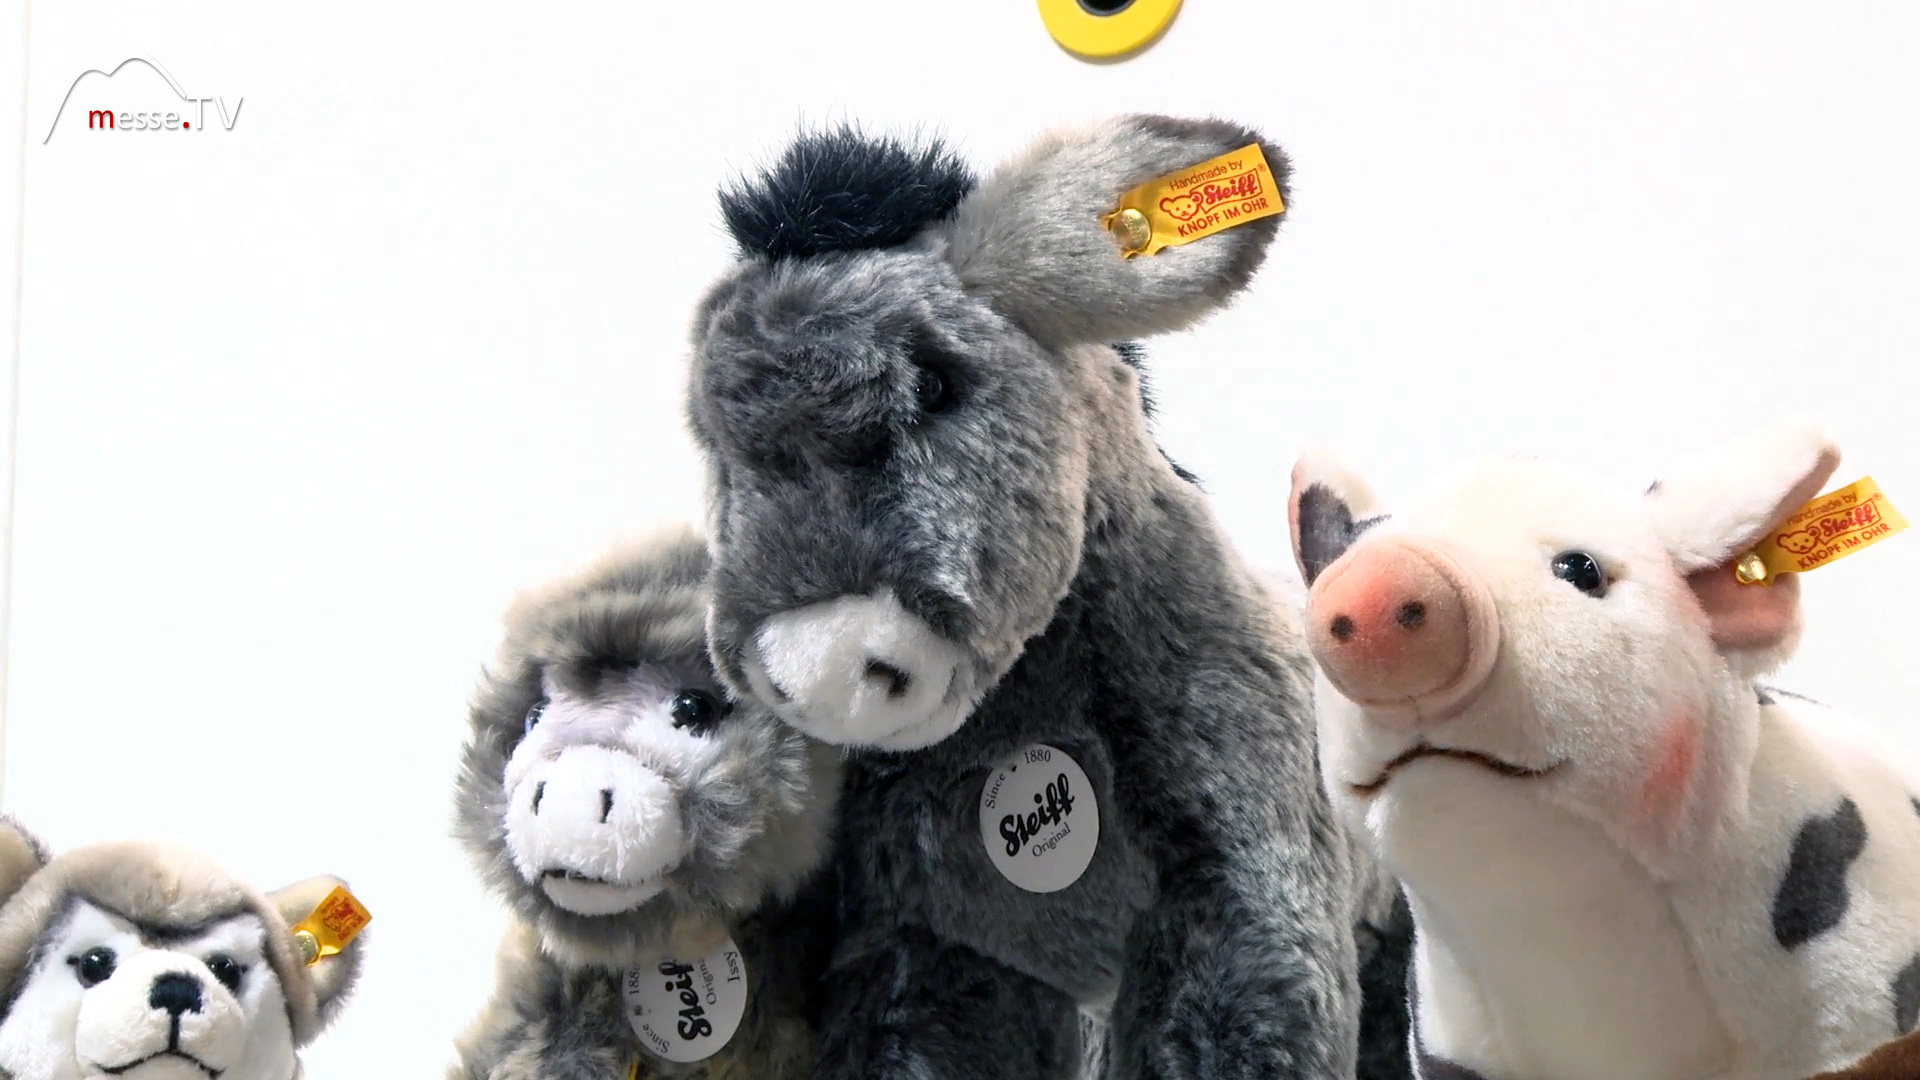 Cuddly toy donkey pig Steiff